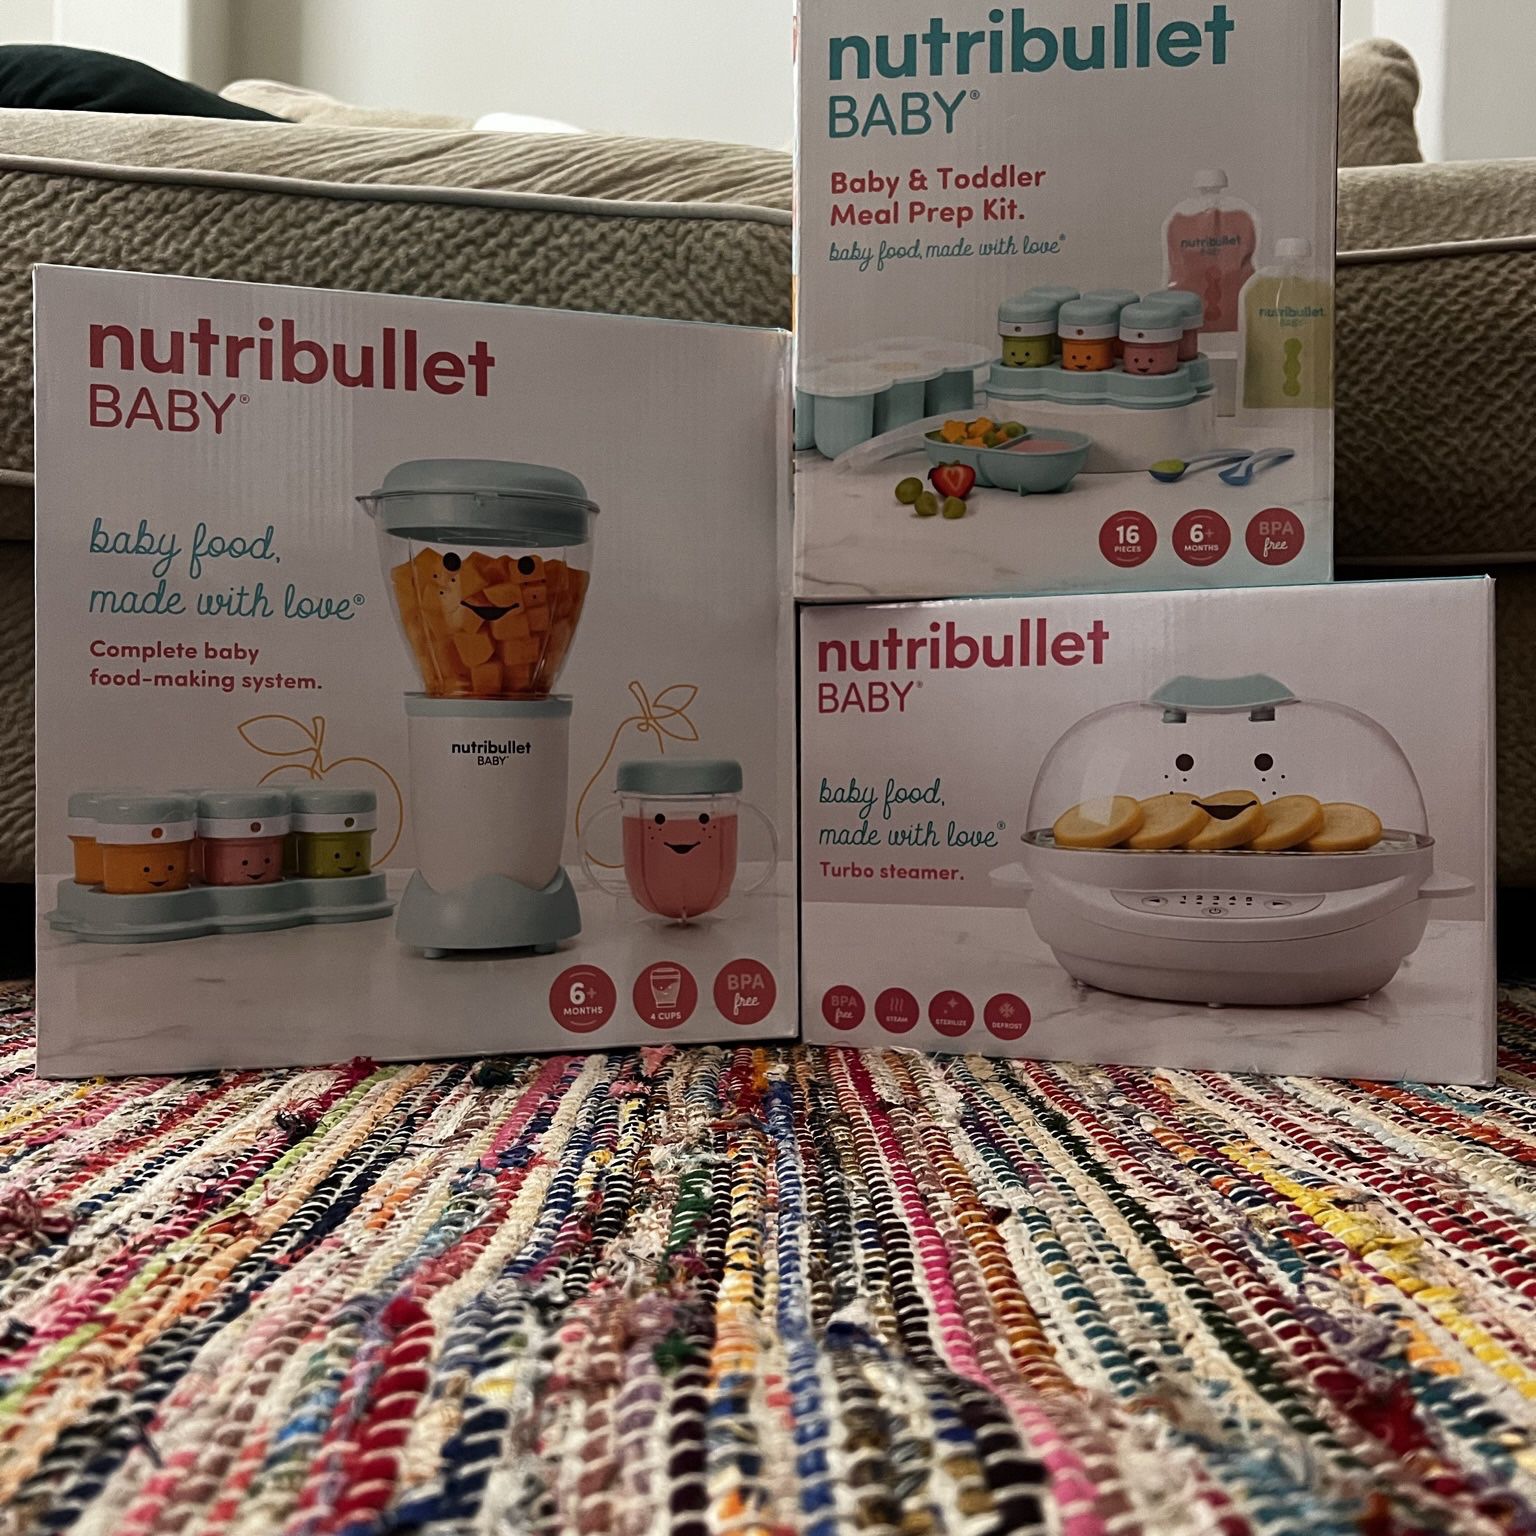 nutribullet - The NutriBullet Baby Turbo Steamer is